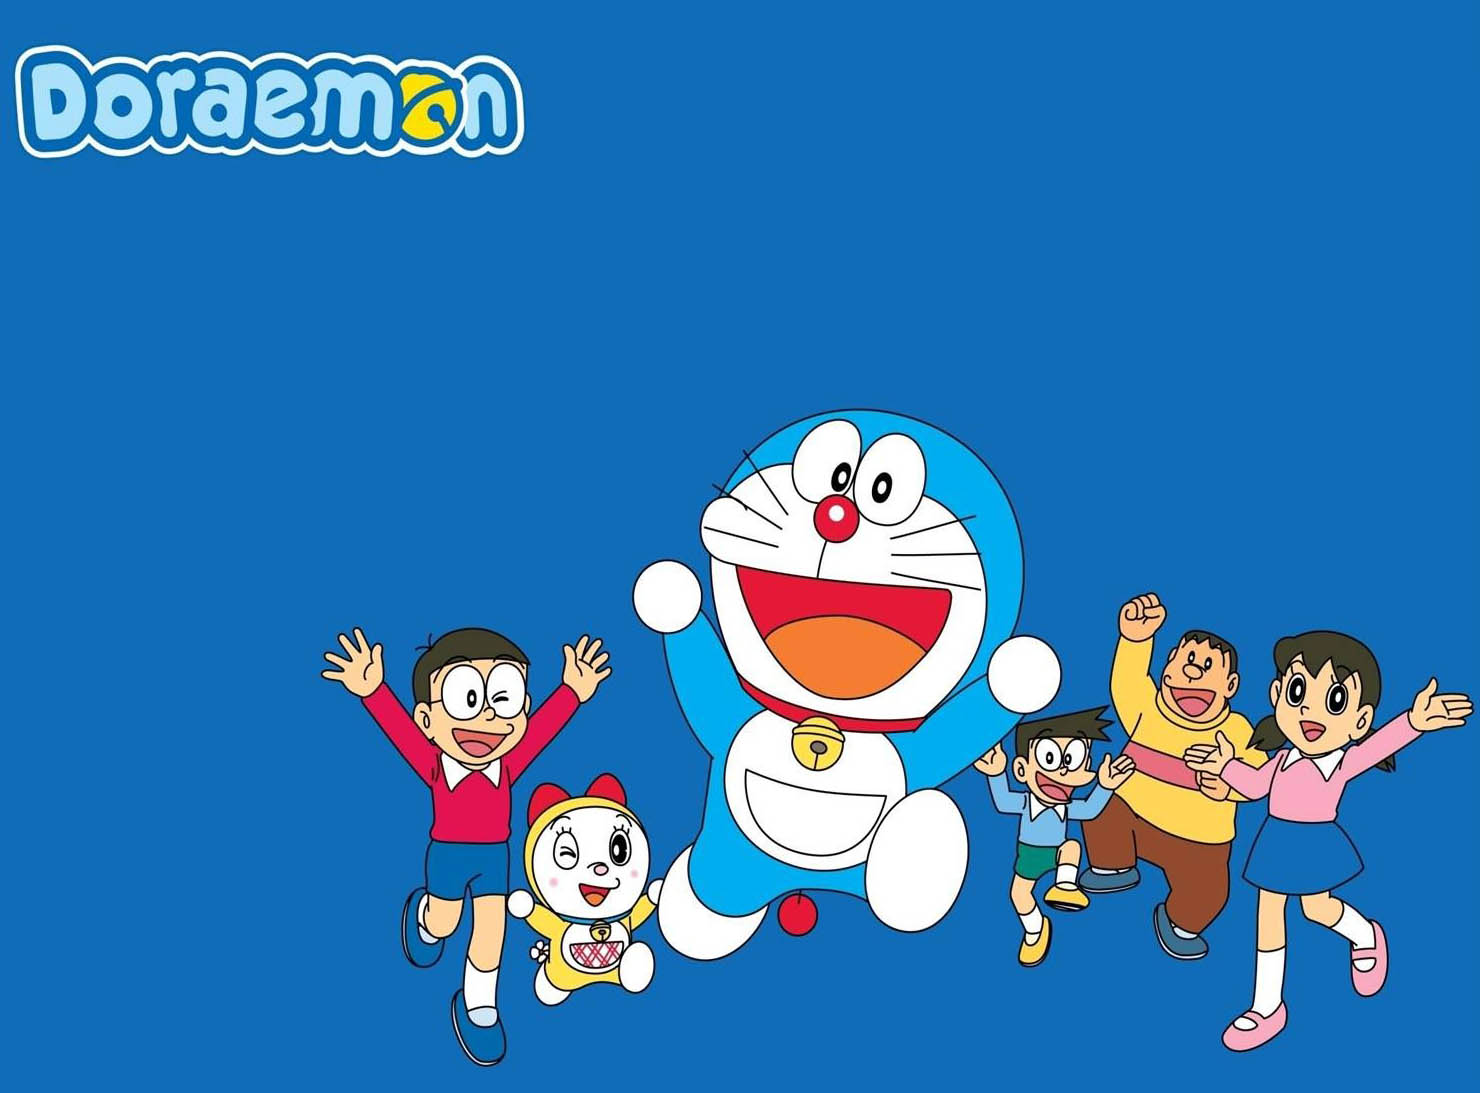 Doraemon Anime Wallpaper Hd - Background Doraemon - 1480x1093 Wallpaper -  